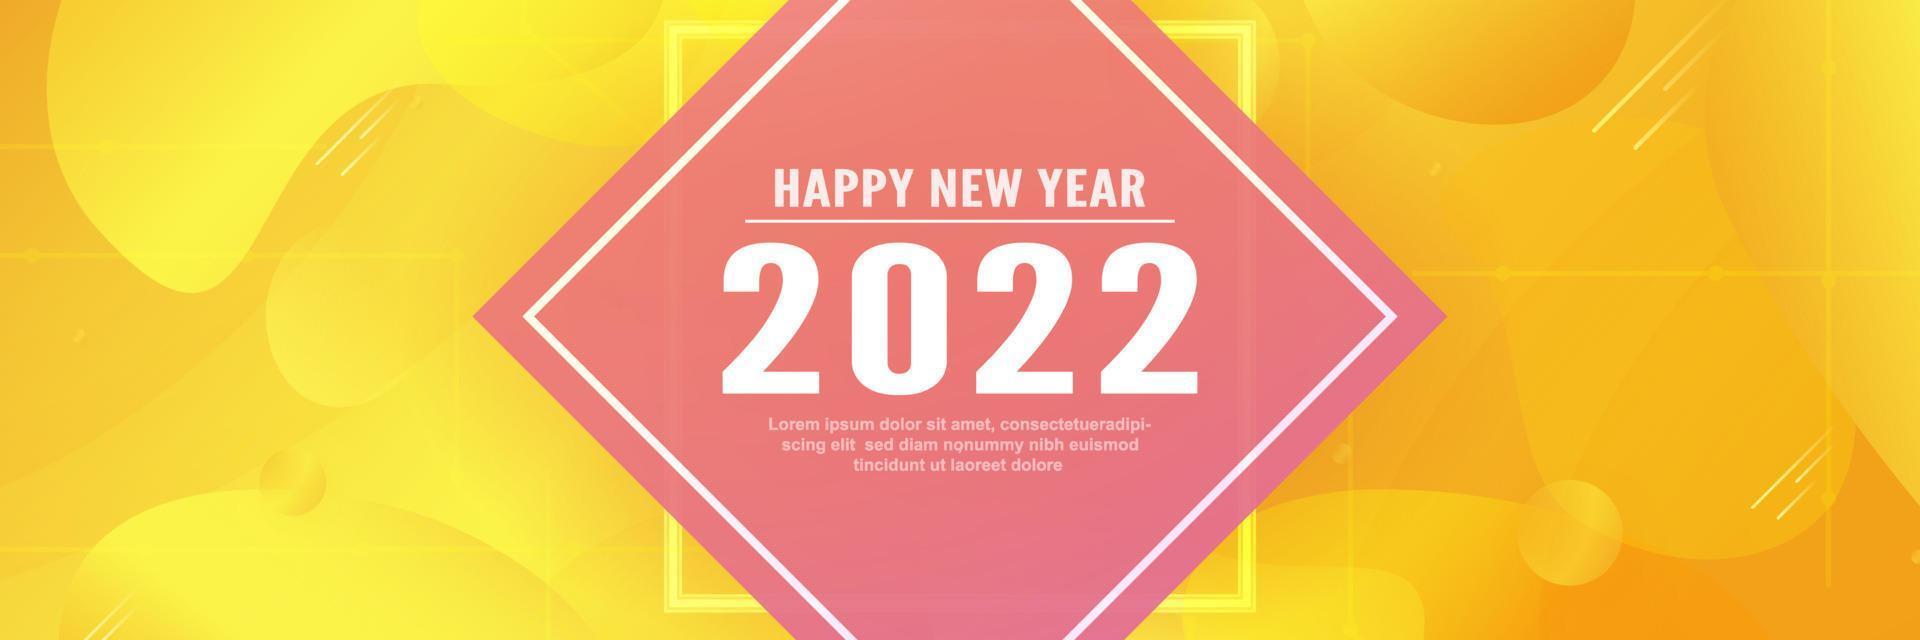 modelo de feliz ano novo 2022. desenho abstrato com estilo fluido. vetor